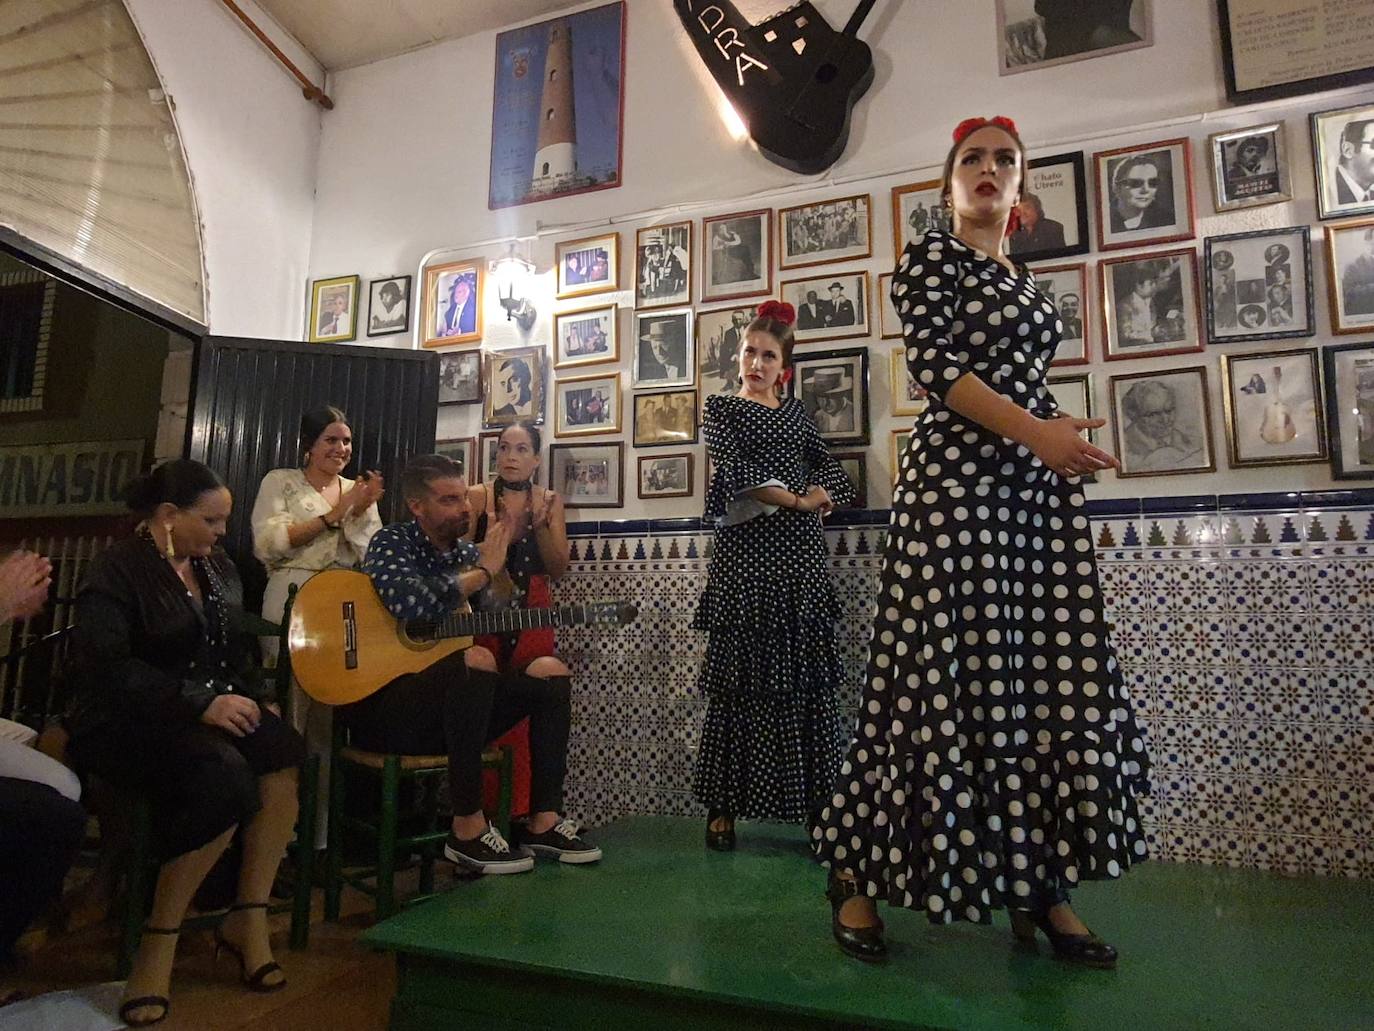 La peña Adra La Torre organiza una 'zambombá' flamenca con cante, baile, mantecados y castañas